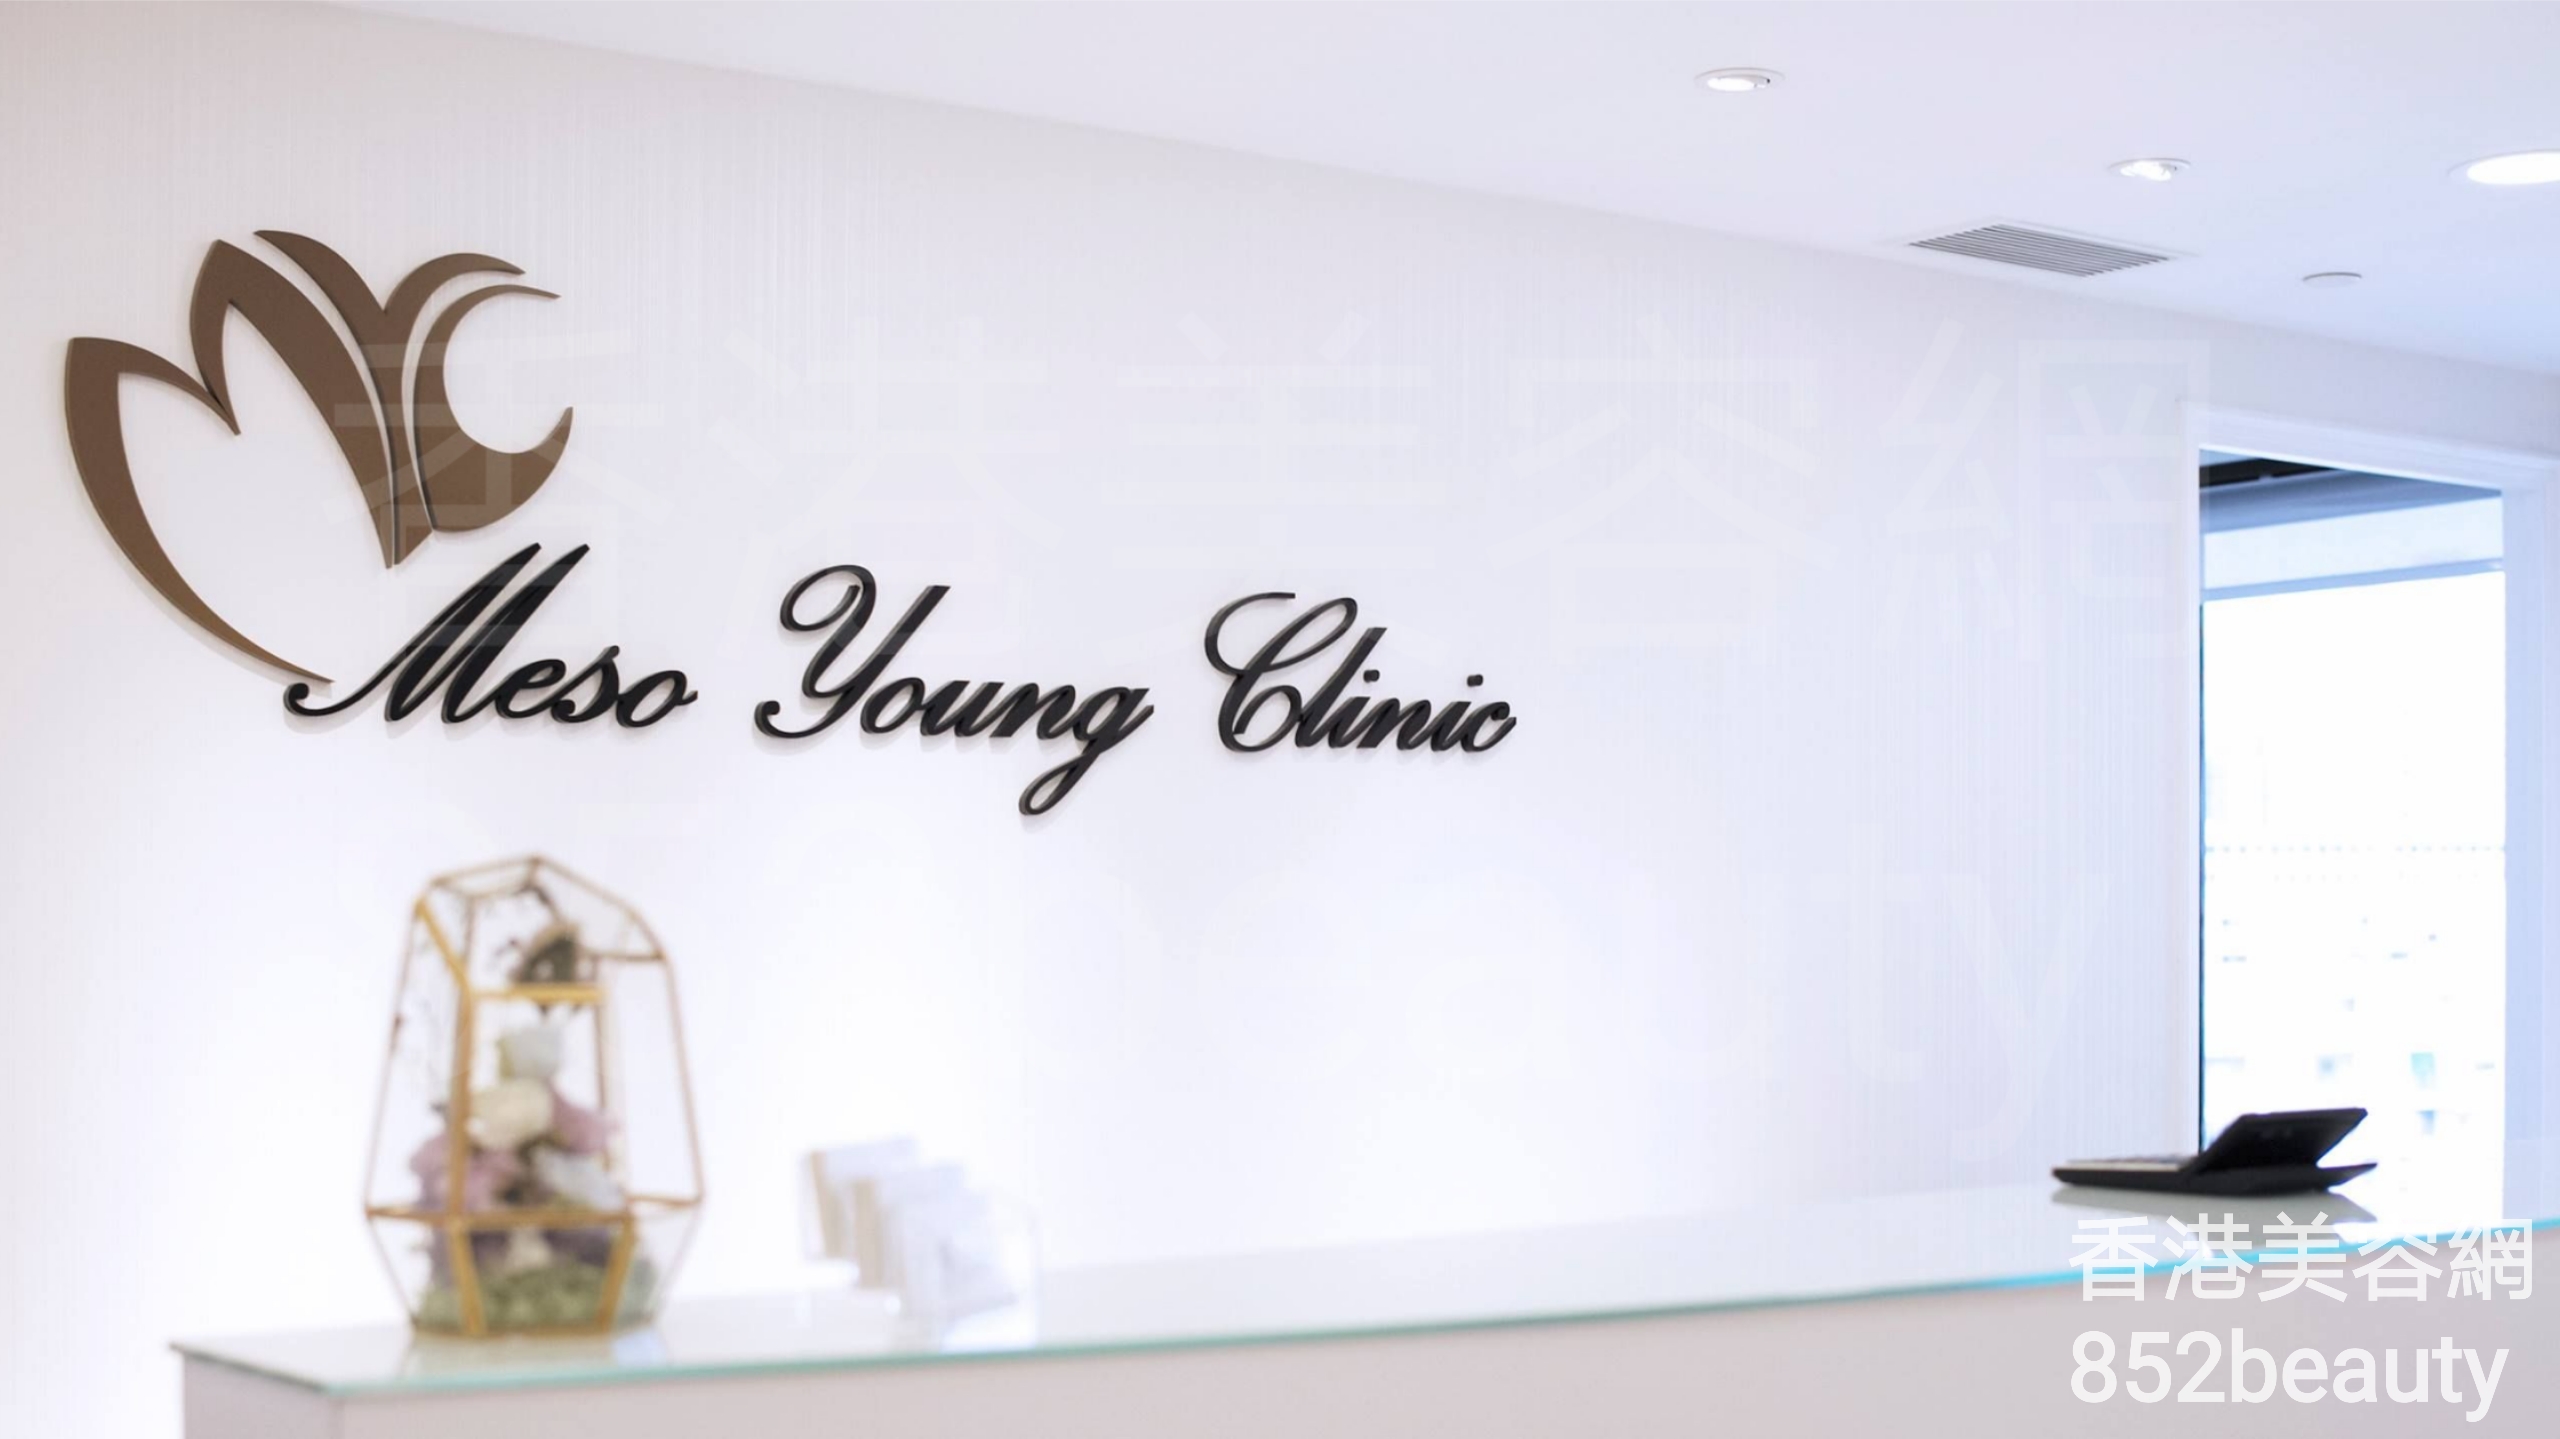 香港美容網 Hong Kong Beauty Salon 美容院 / 美容師: Meso Young Clinic